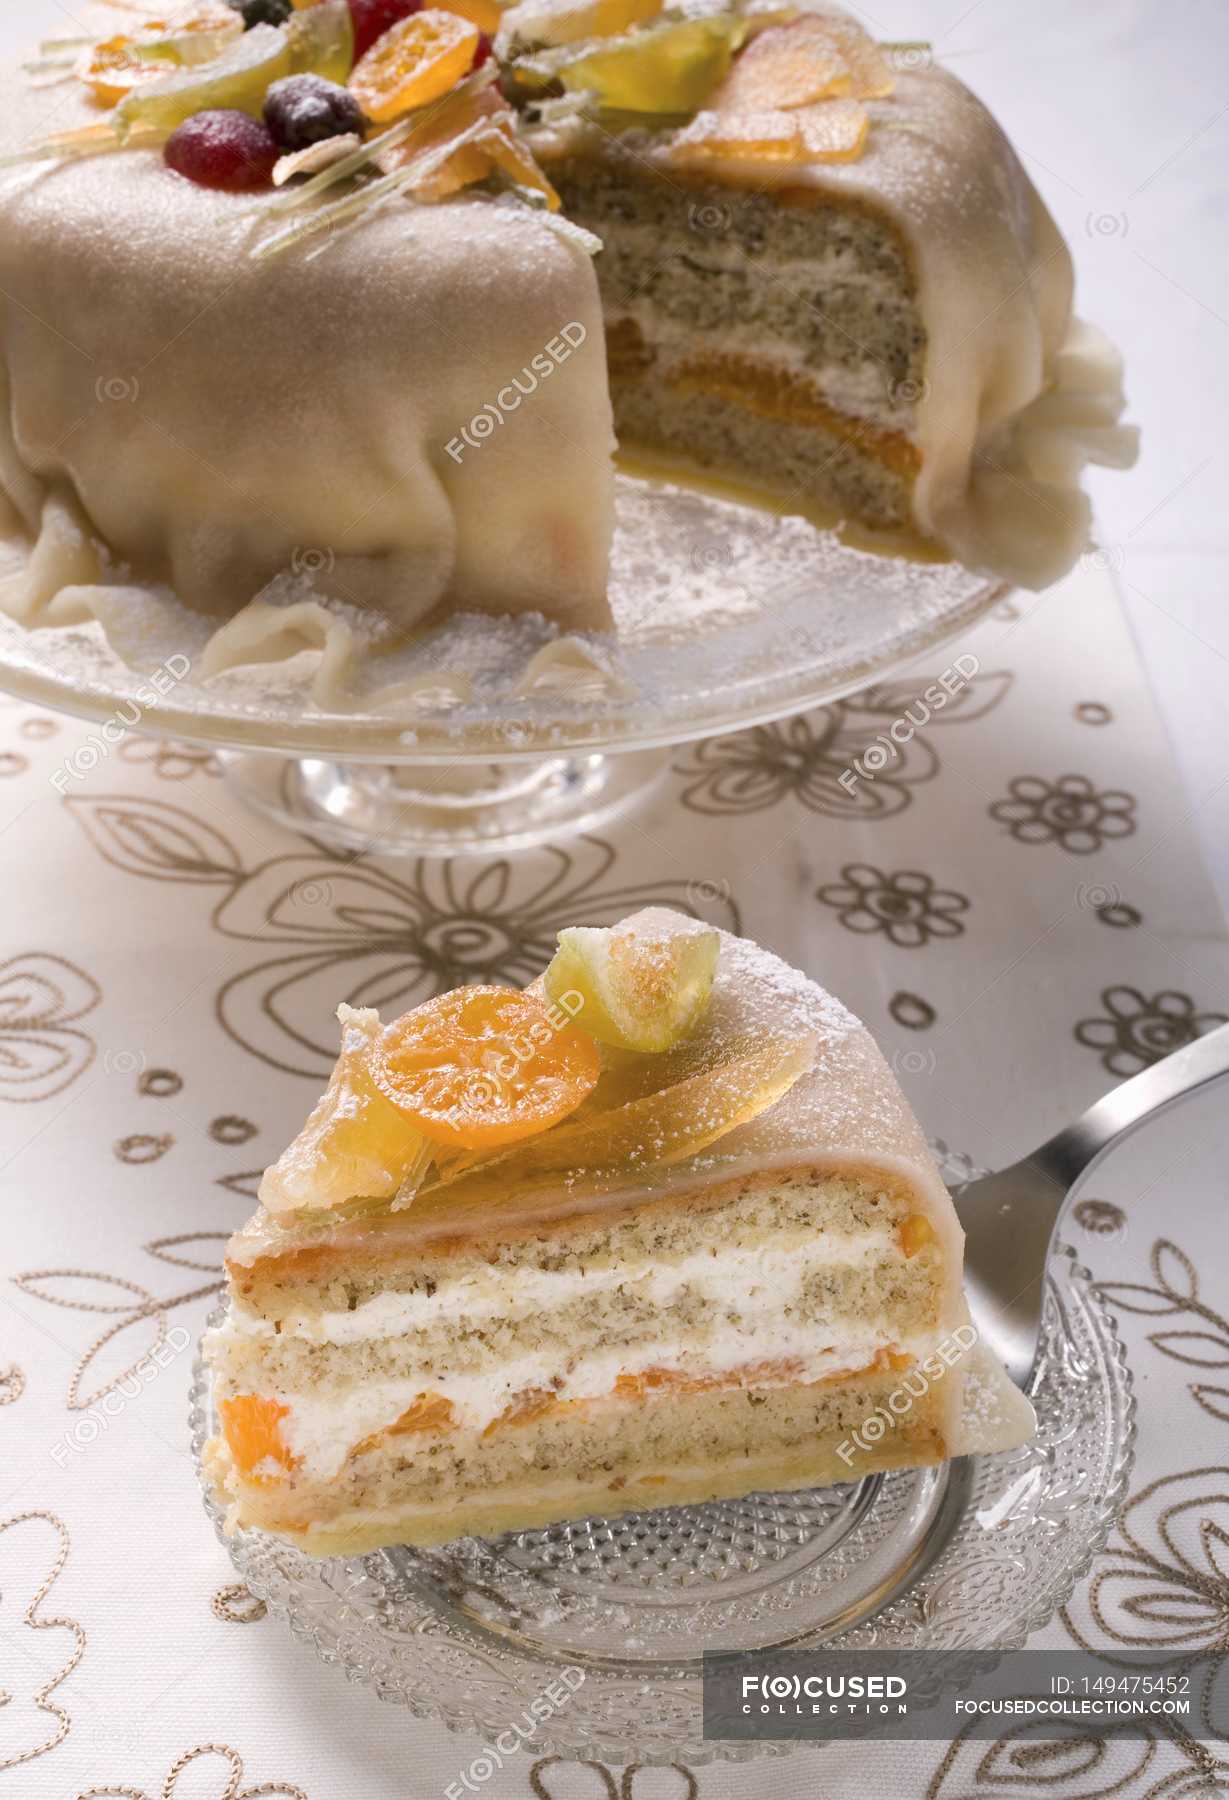 Princess Cake | Recipe | Delicious cake recipes, Princess cake, Yummy cakes